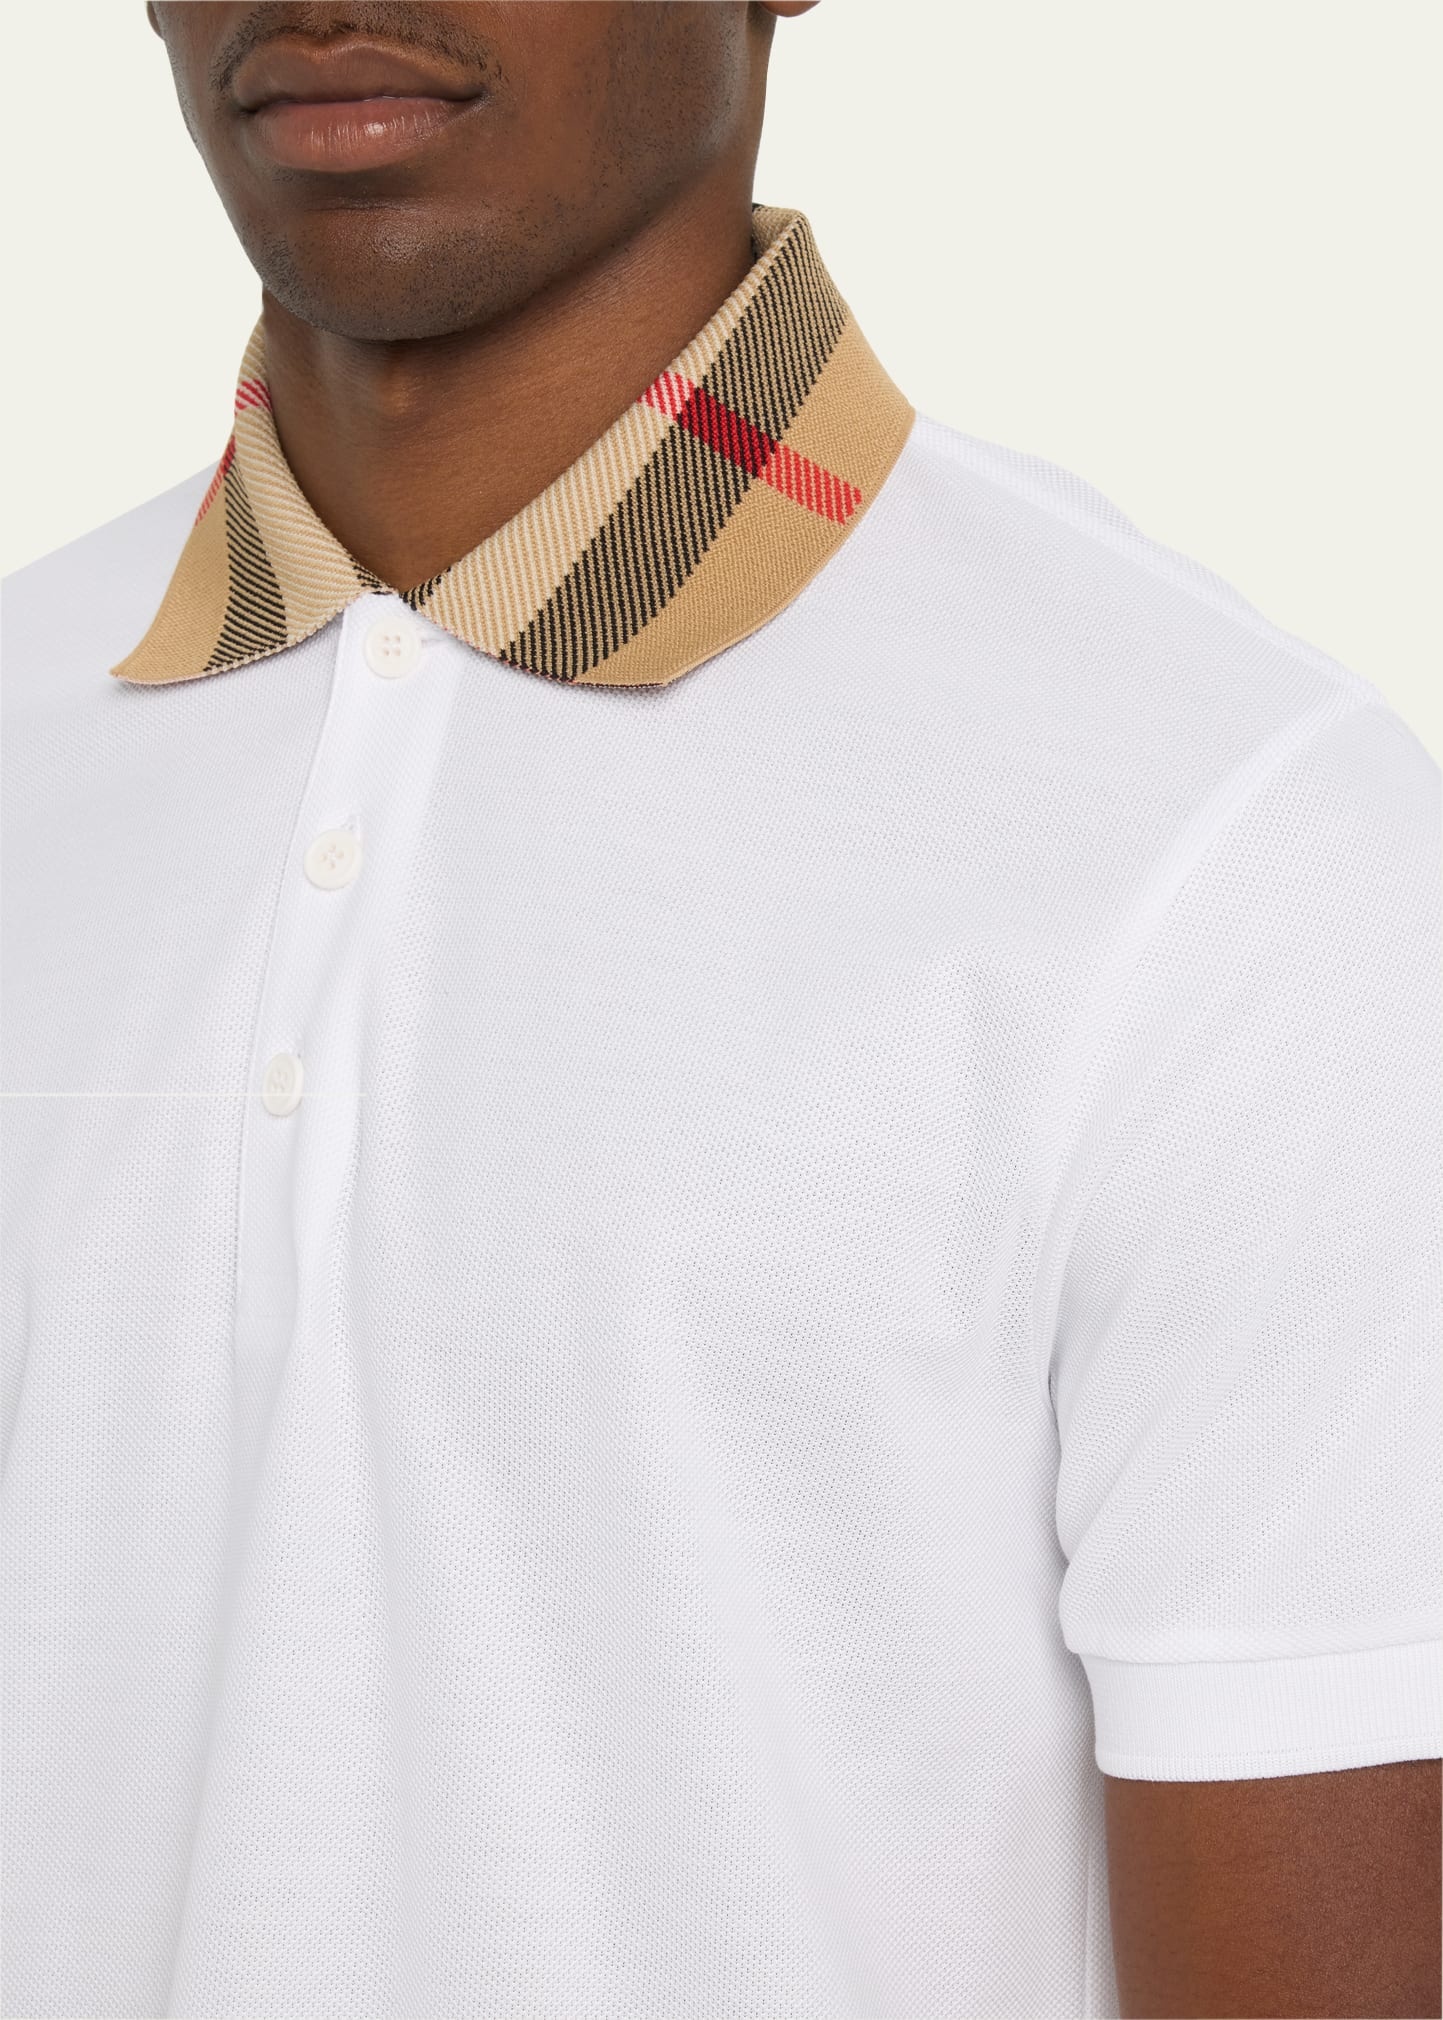 Men's Pique Polo Shirt with Check Collar - 5